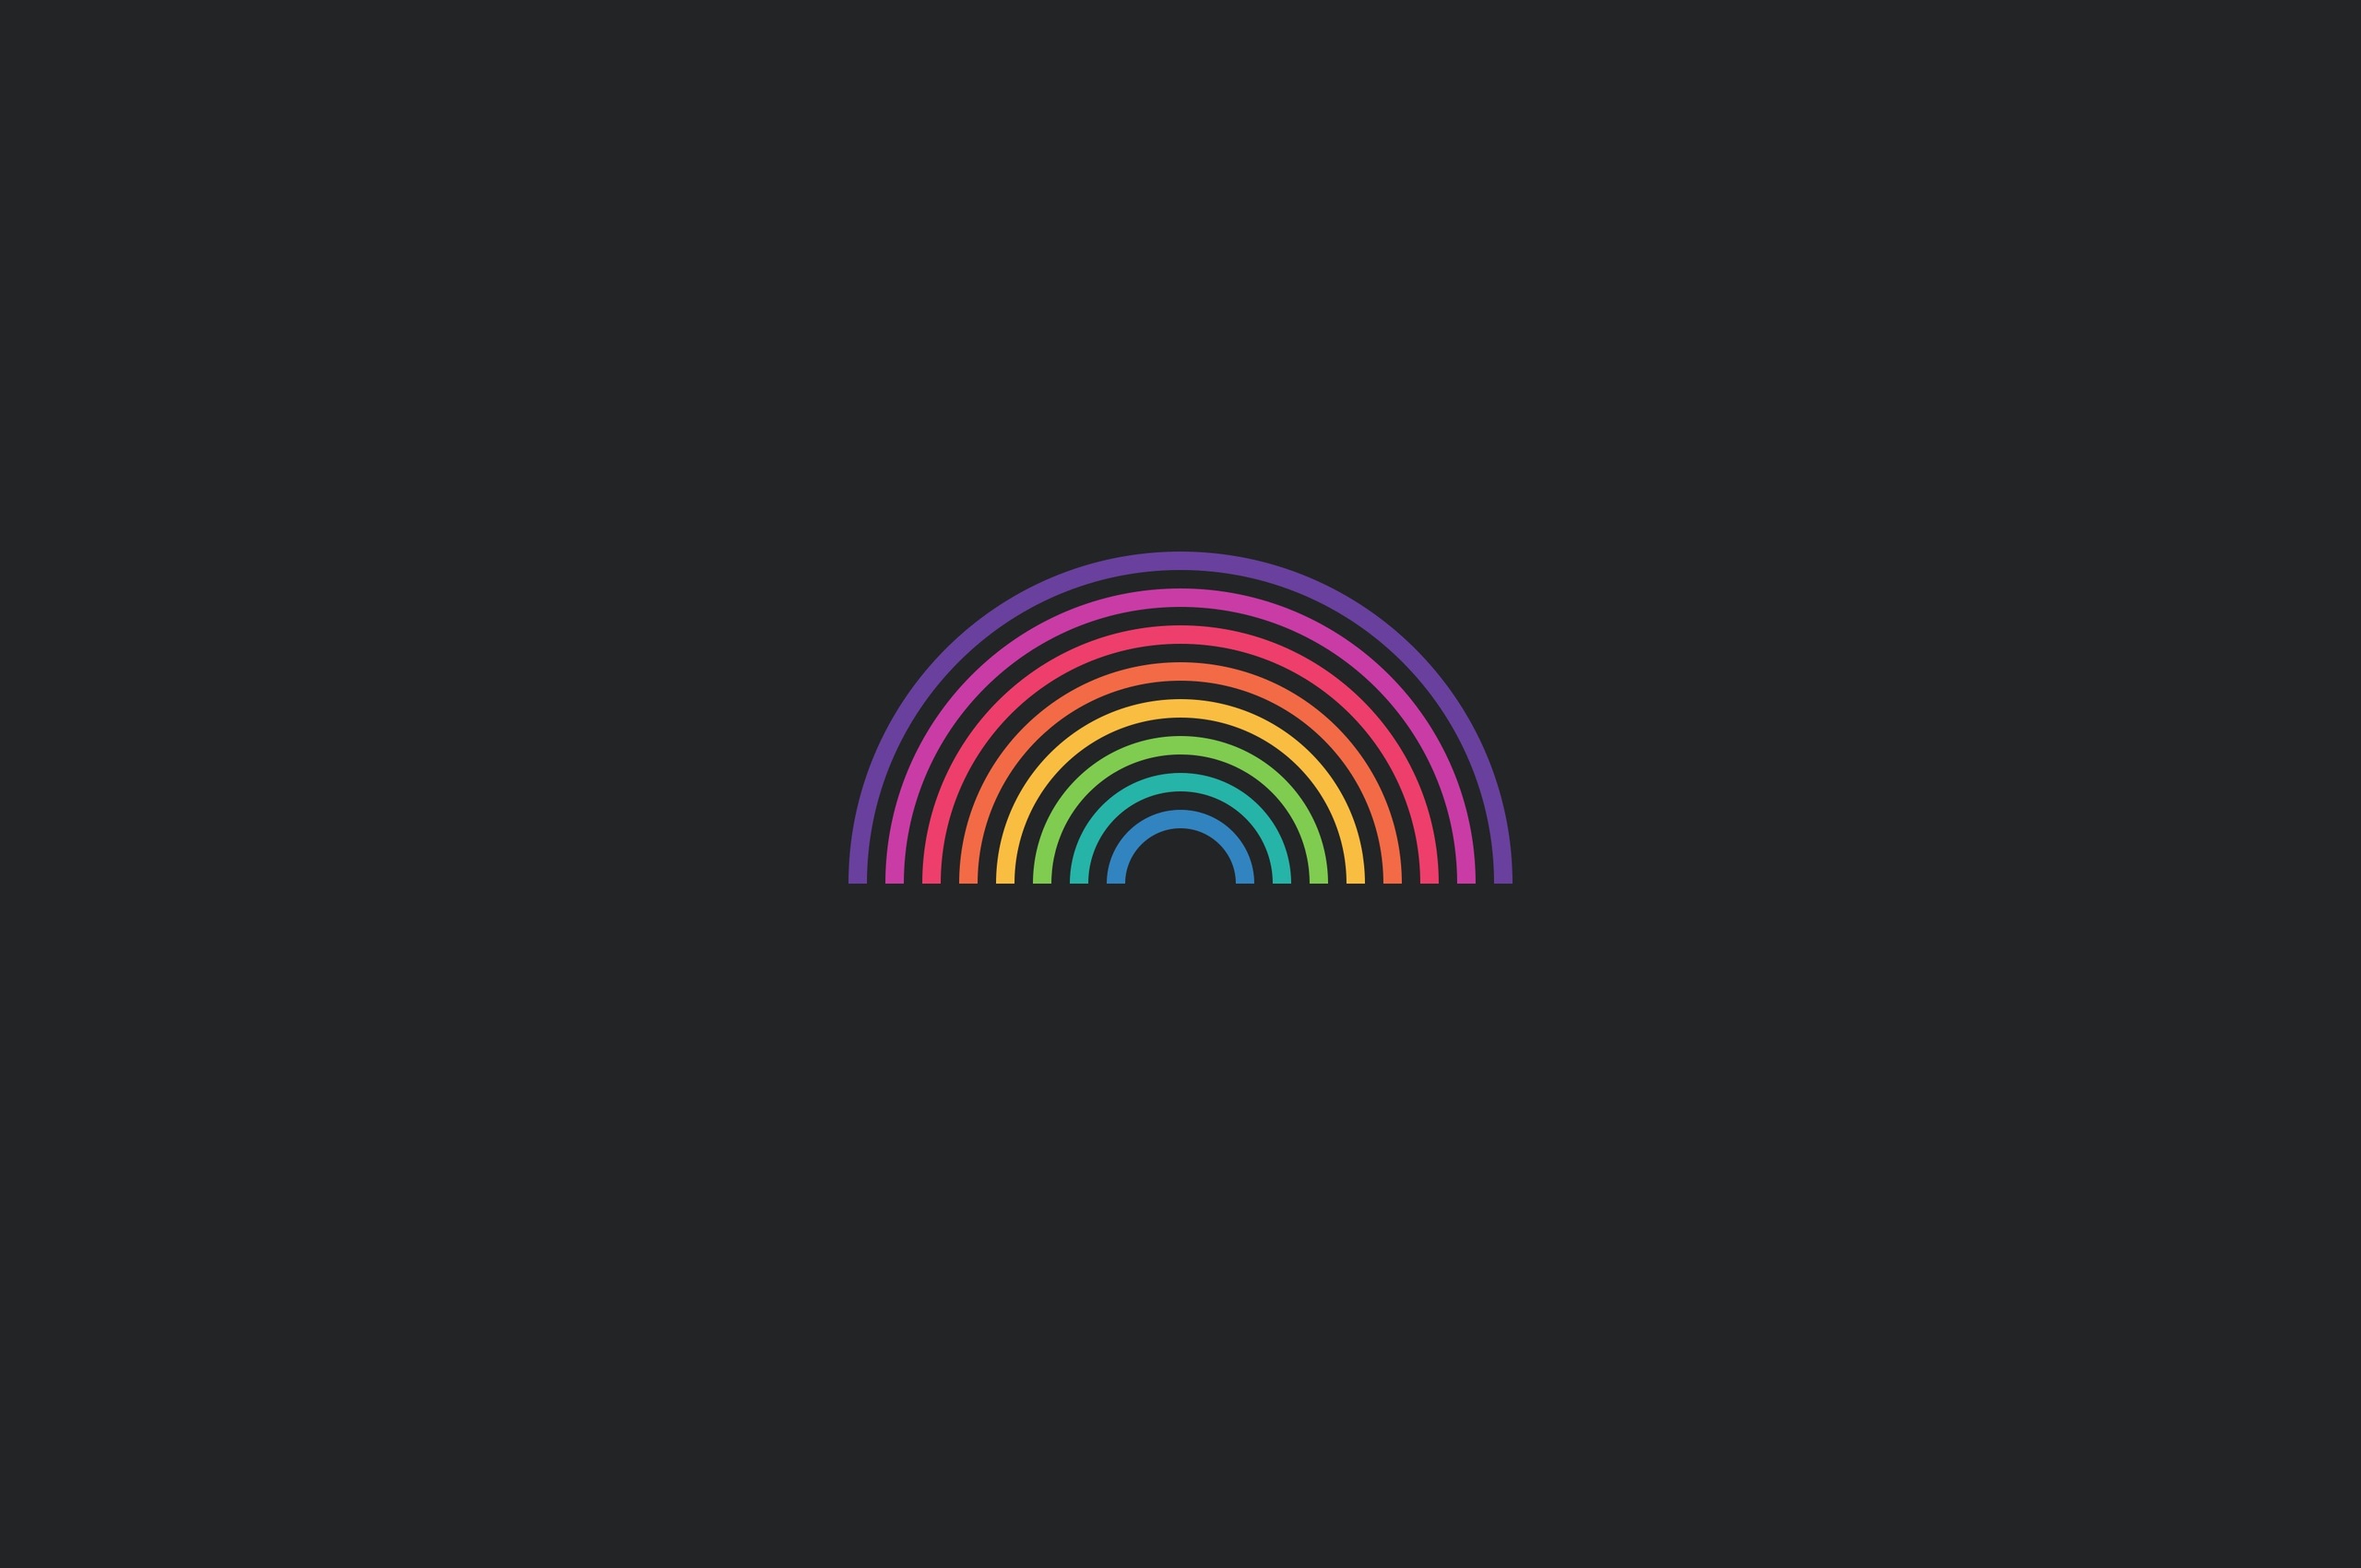 A rainbow on a black background - Rainbows